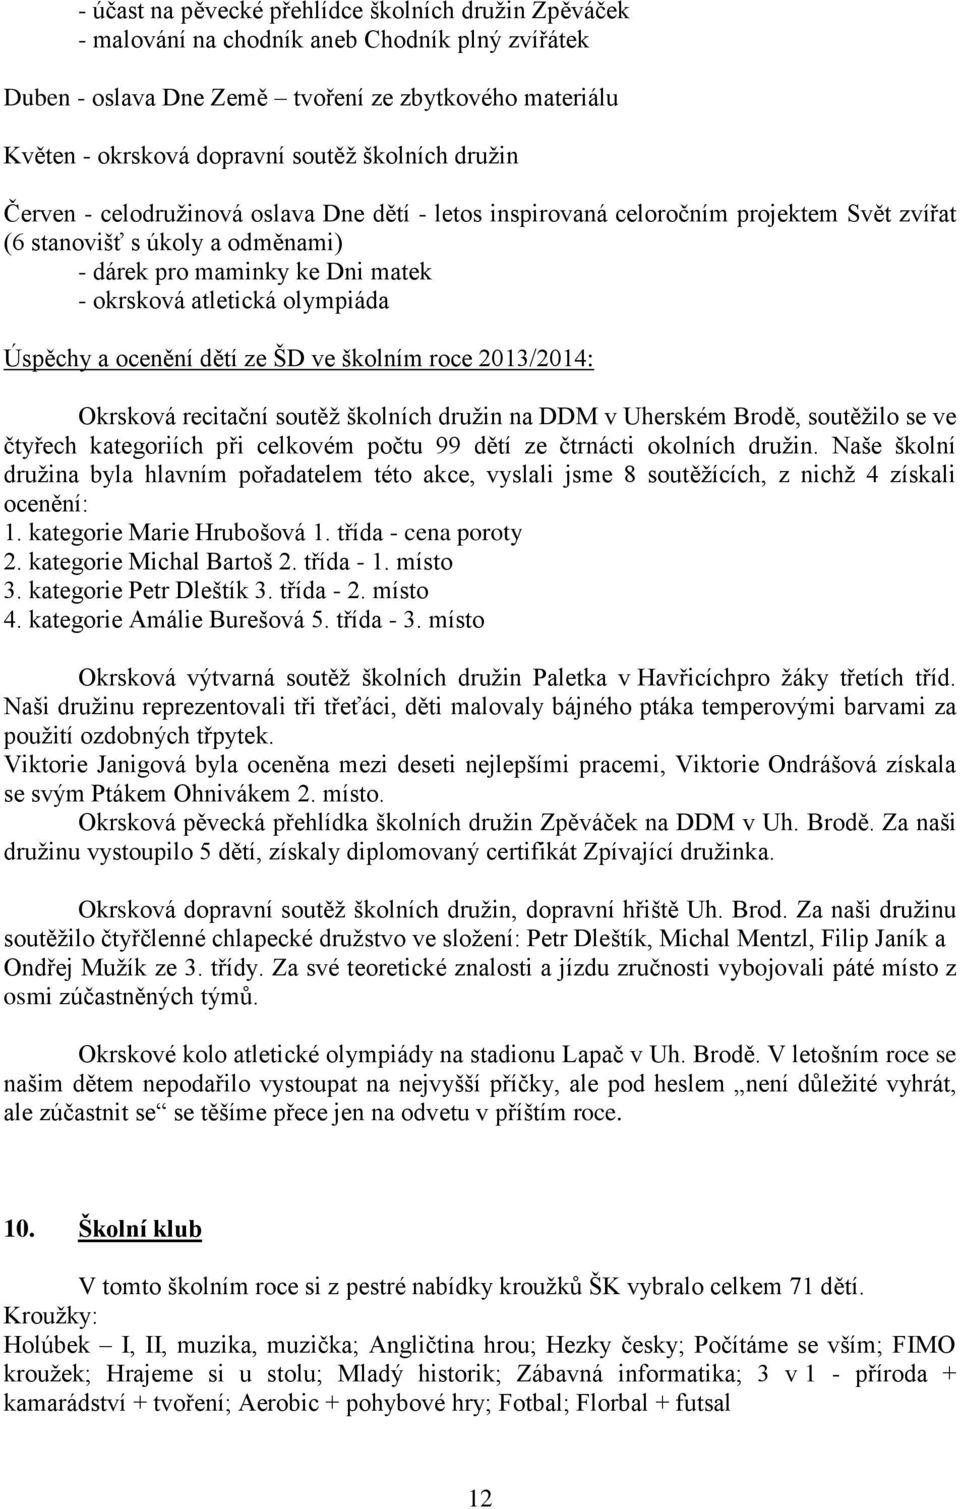 olympiáda Úspěchy a ocenění dětí ze ŠD ve školním roce 2013/2014: Okrsková recitační soutěž školních družin na DDM v Uherském Brodě, soutěžilo se ve čtyřech kategoriích při celkovém počtu 99 dětí ze